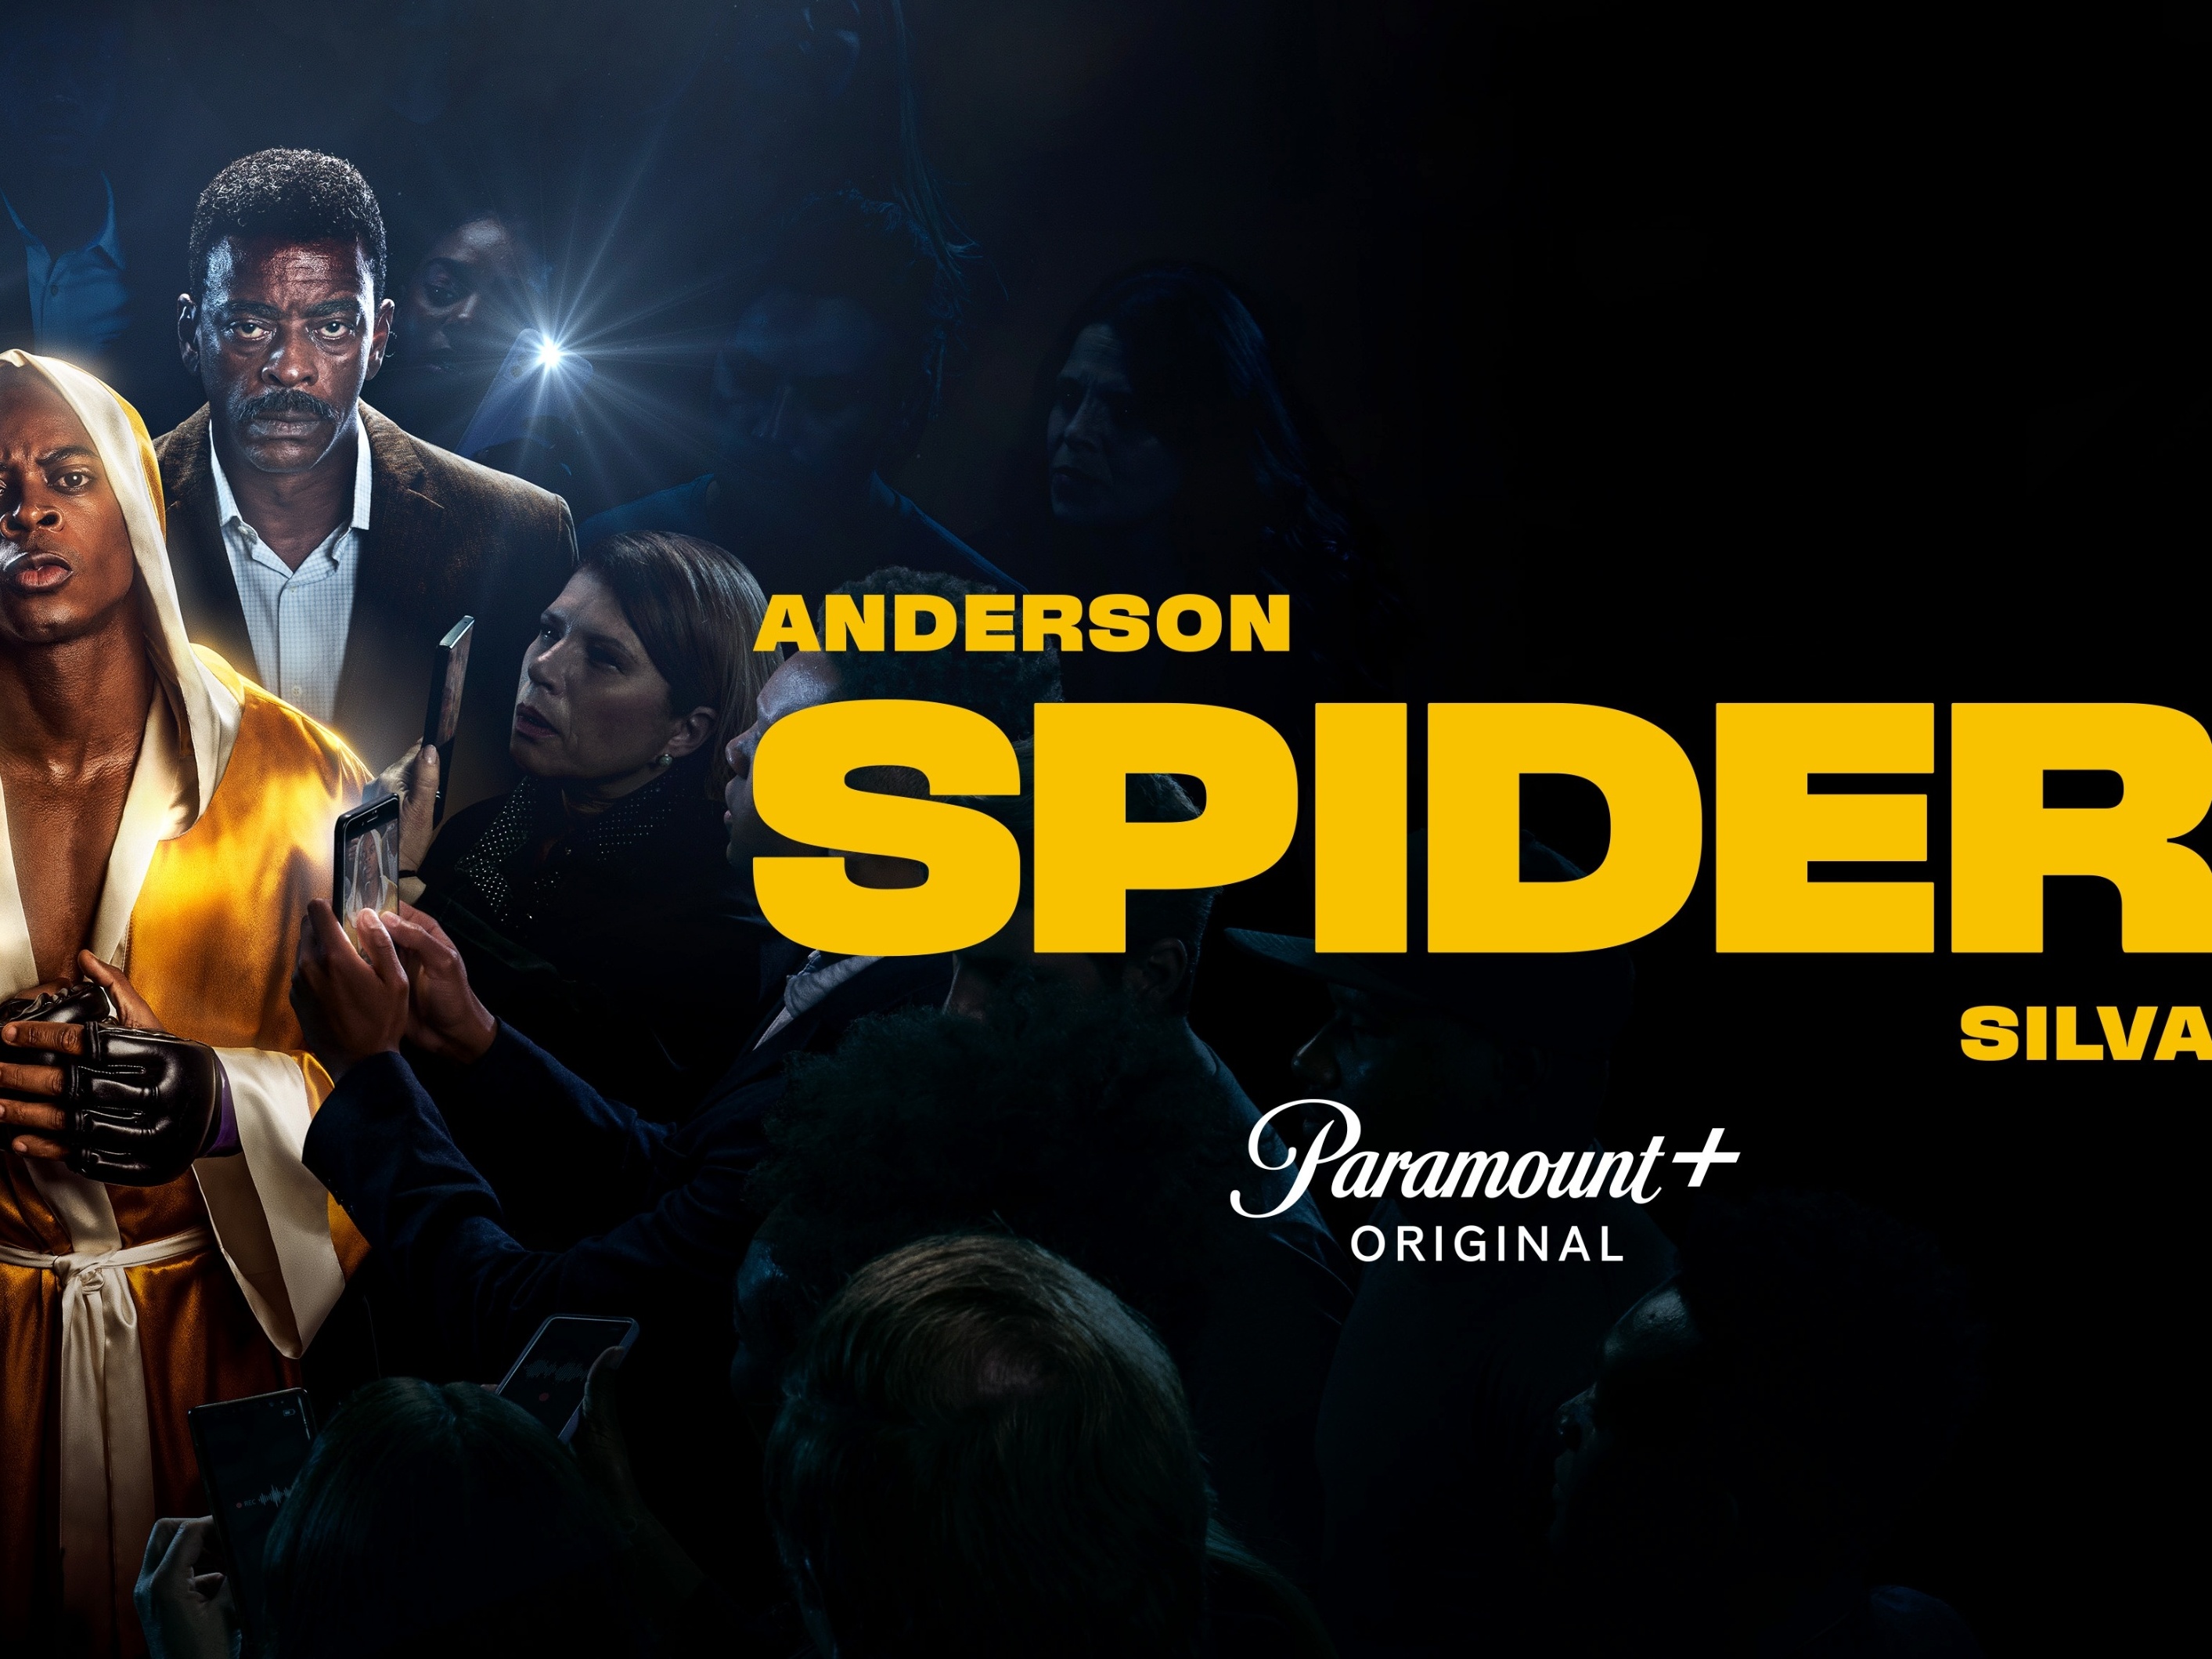 Anderson Spider Silva, série biográfica de ficção, estreia nesta quinta no  Paramount+ - Bastidores - O Planeta TV